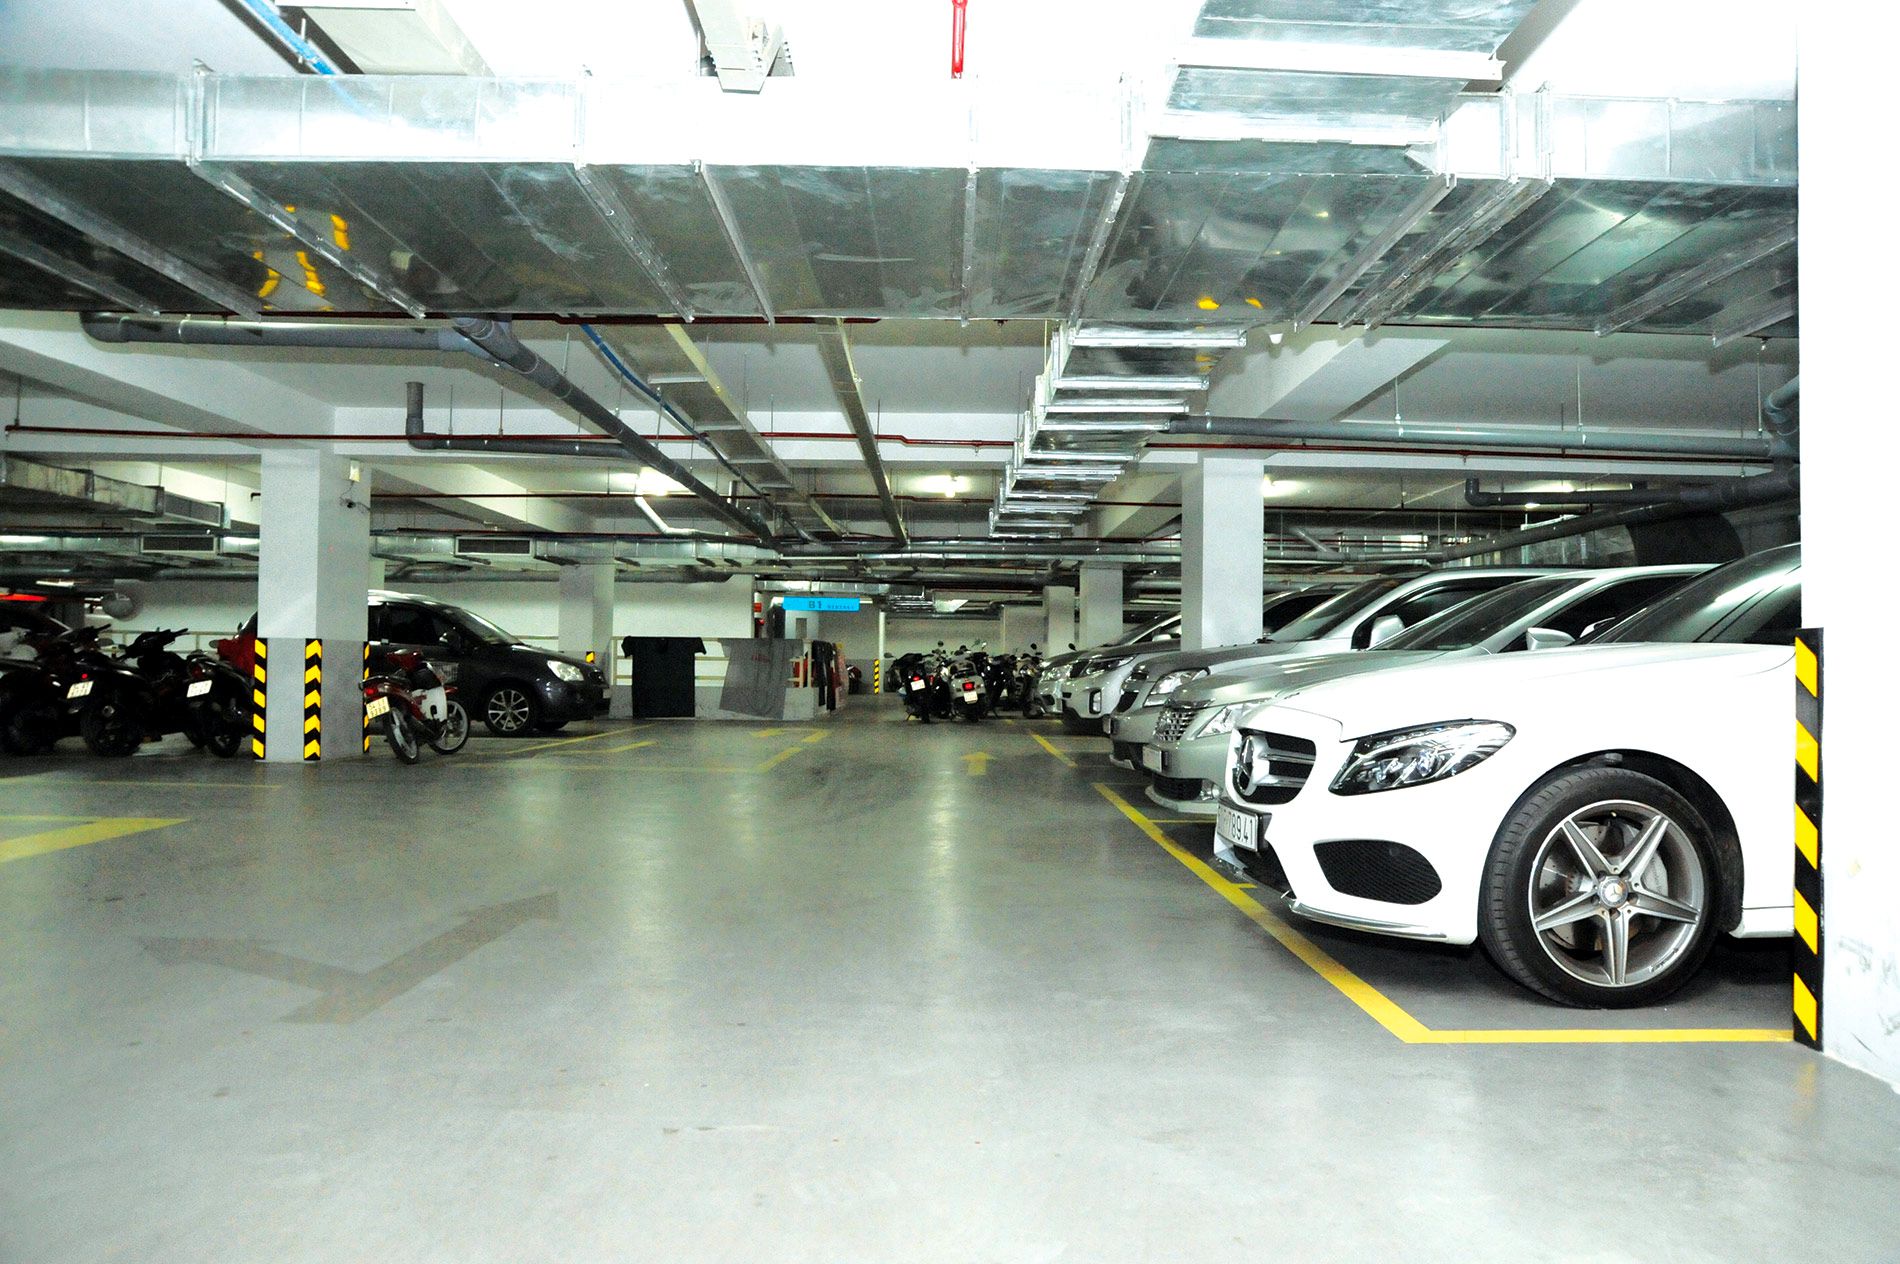 Có đủ chỗ đậu ôtô và xe máy chung cư Lan Phương MHBR TP Thủ Đức không?